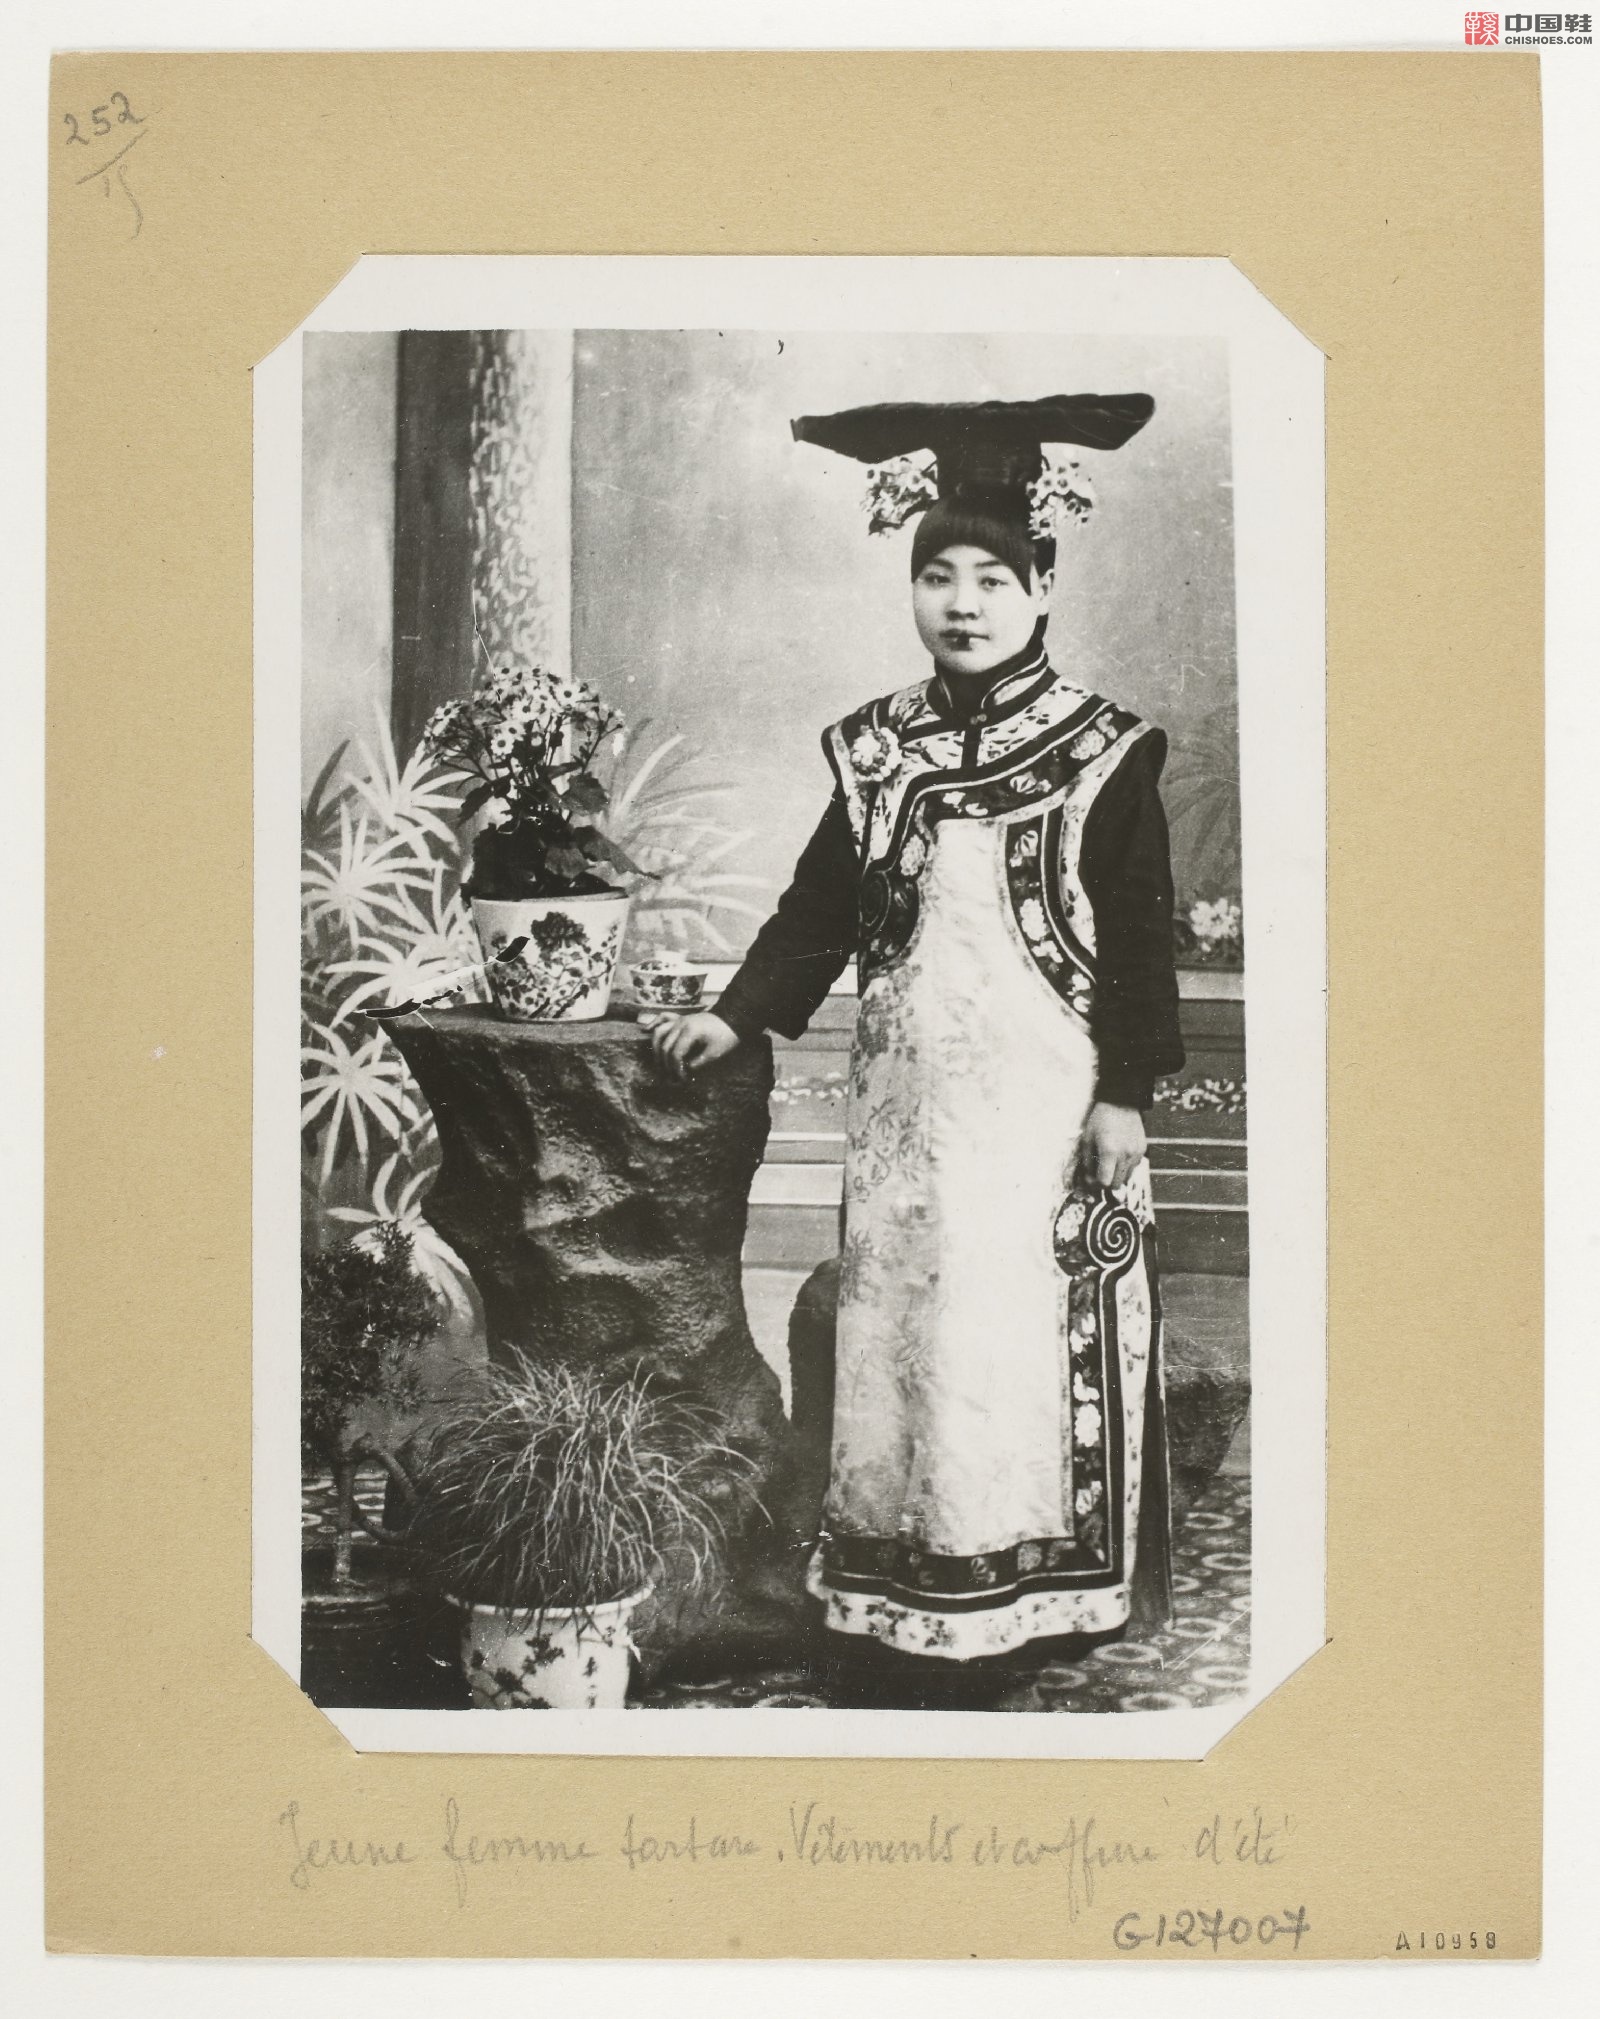 拉里贝的中国影像记录.415幅.By Firmin Laribe.1900-1910年_Page_039.jpg